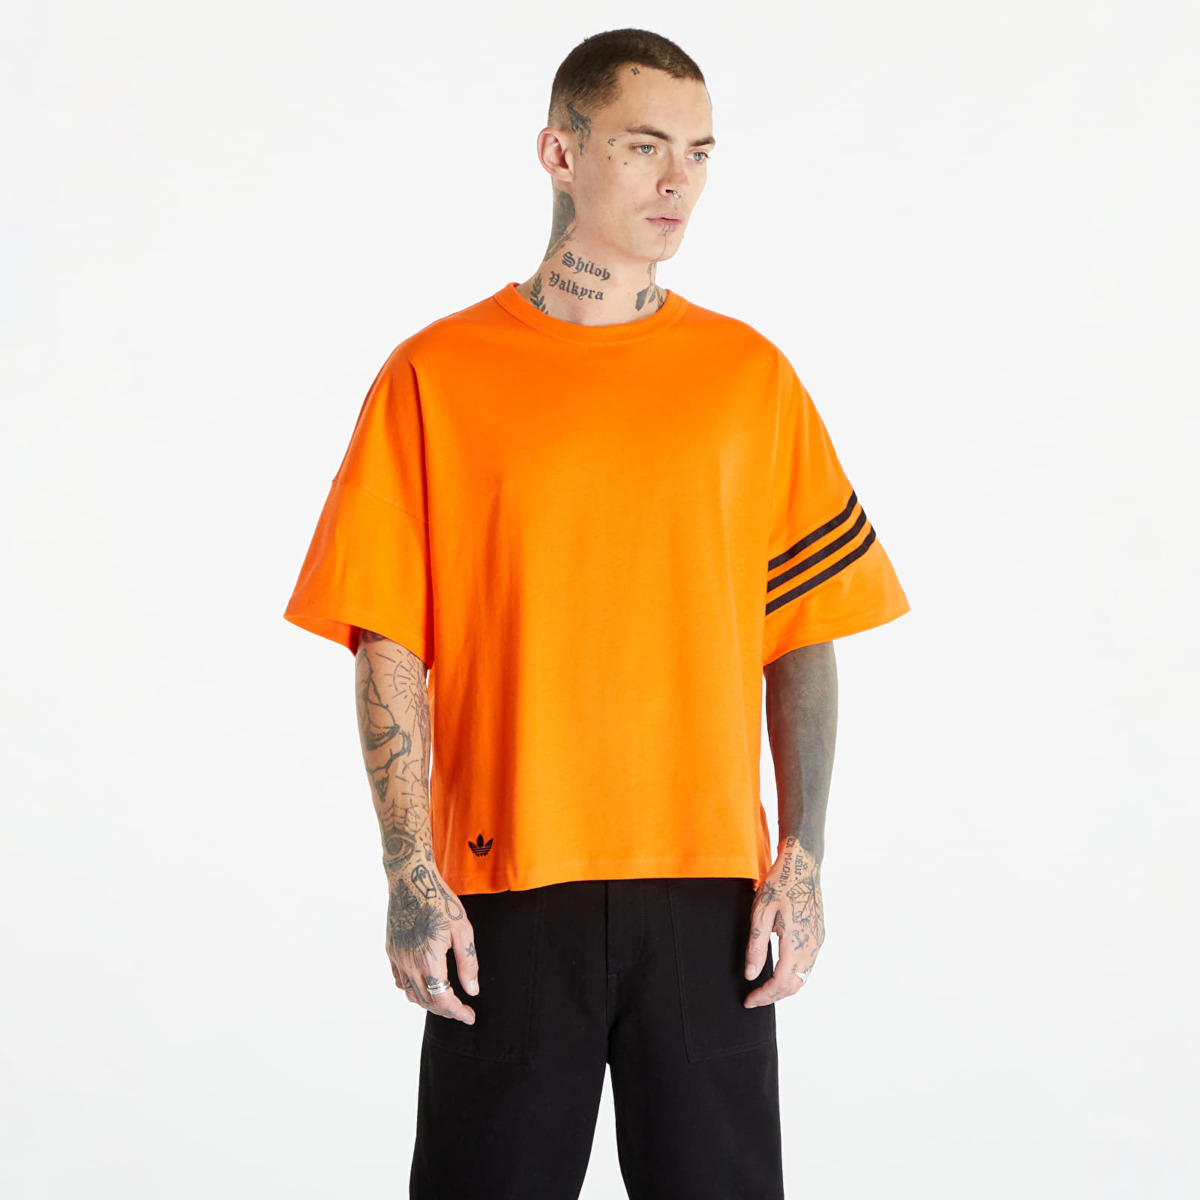 Footshop Top in Orange by Adidas GOOFASH